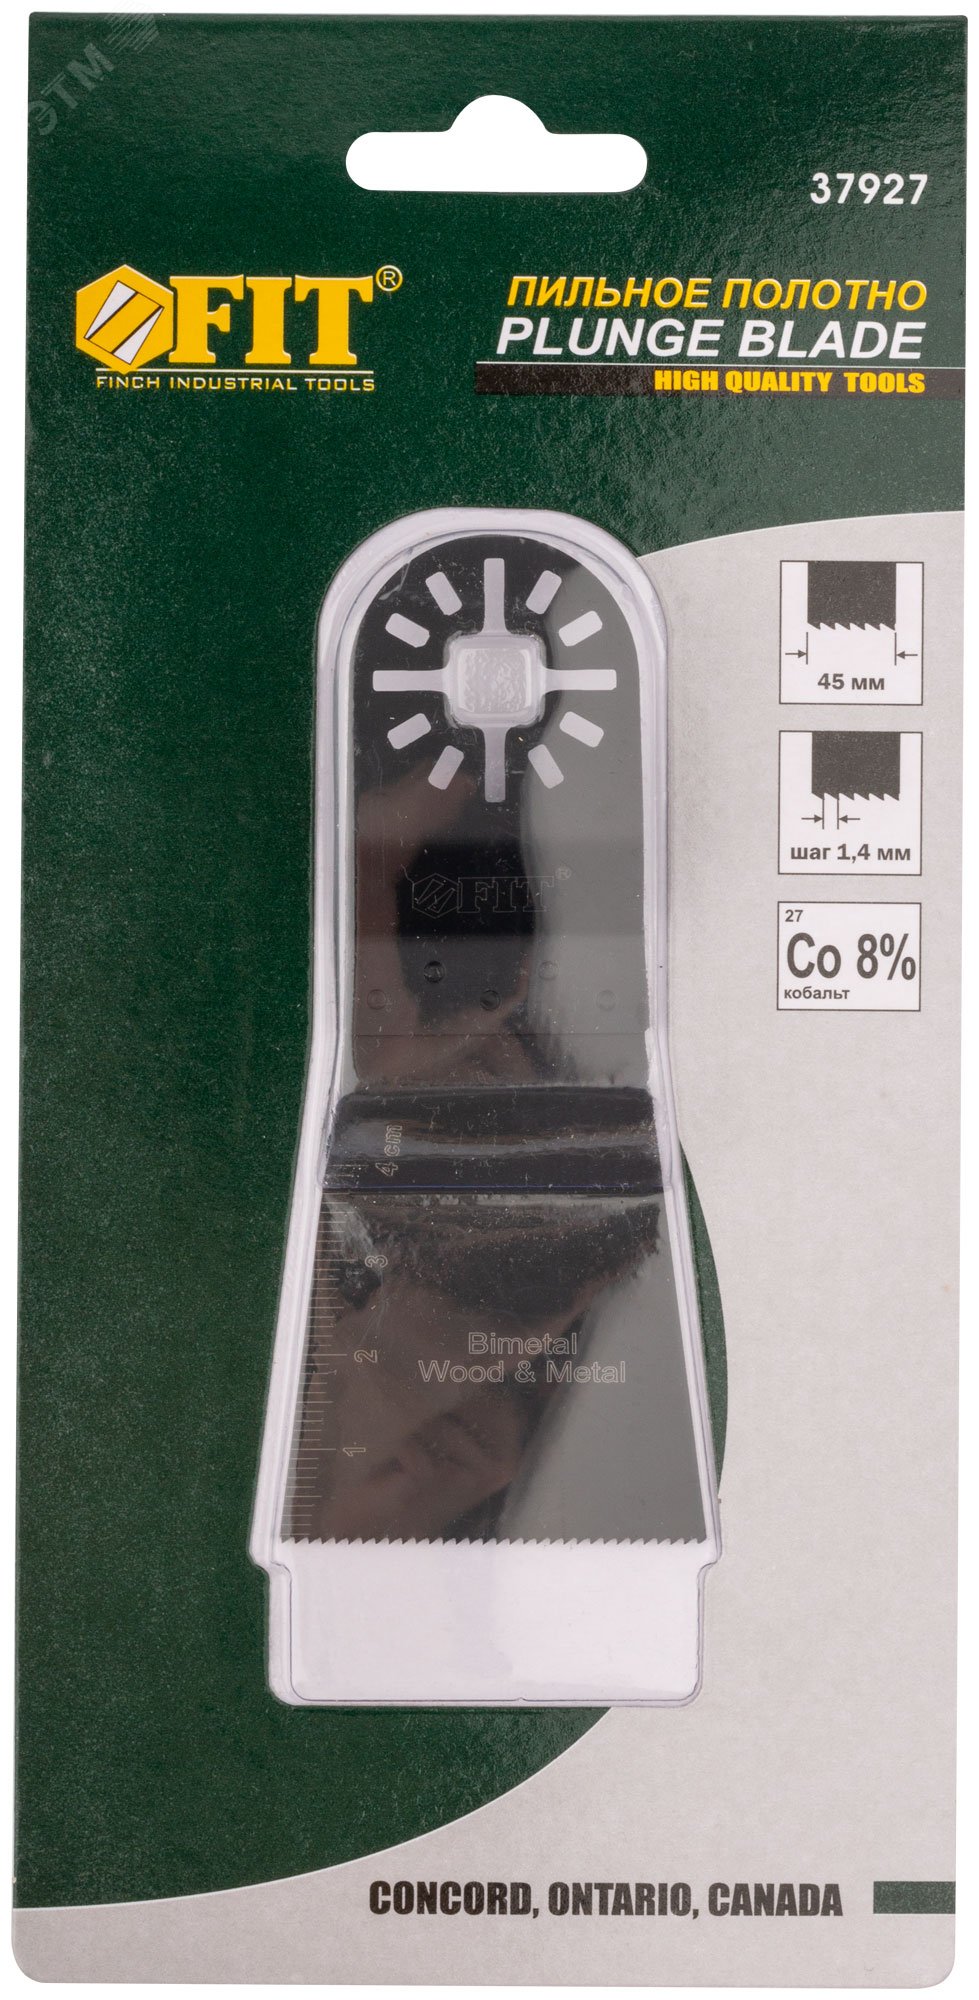 Полотно пильное фрезерованное ступенчатое удлиненное, Bi-metall Co 8%, 45 мм х 0.8 мм 37927 FIT - превью 3